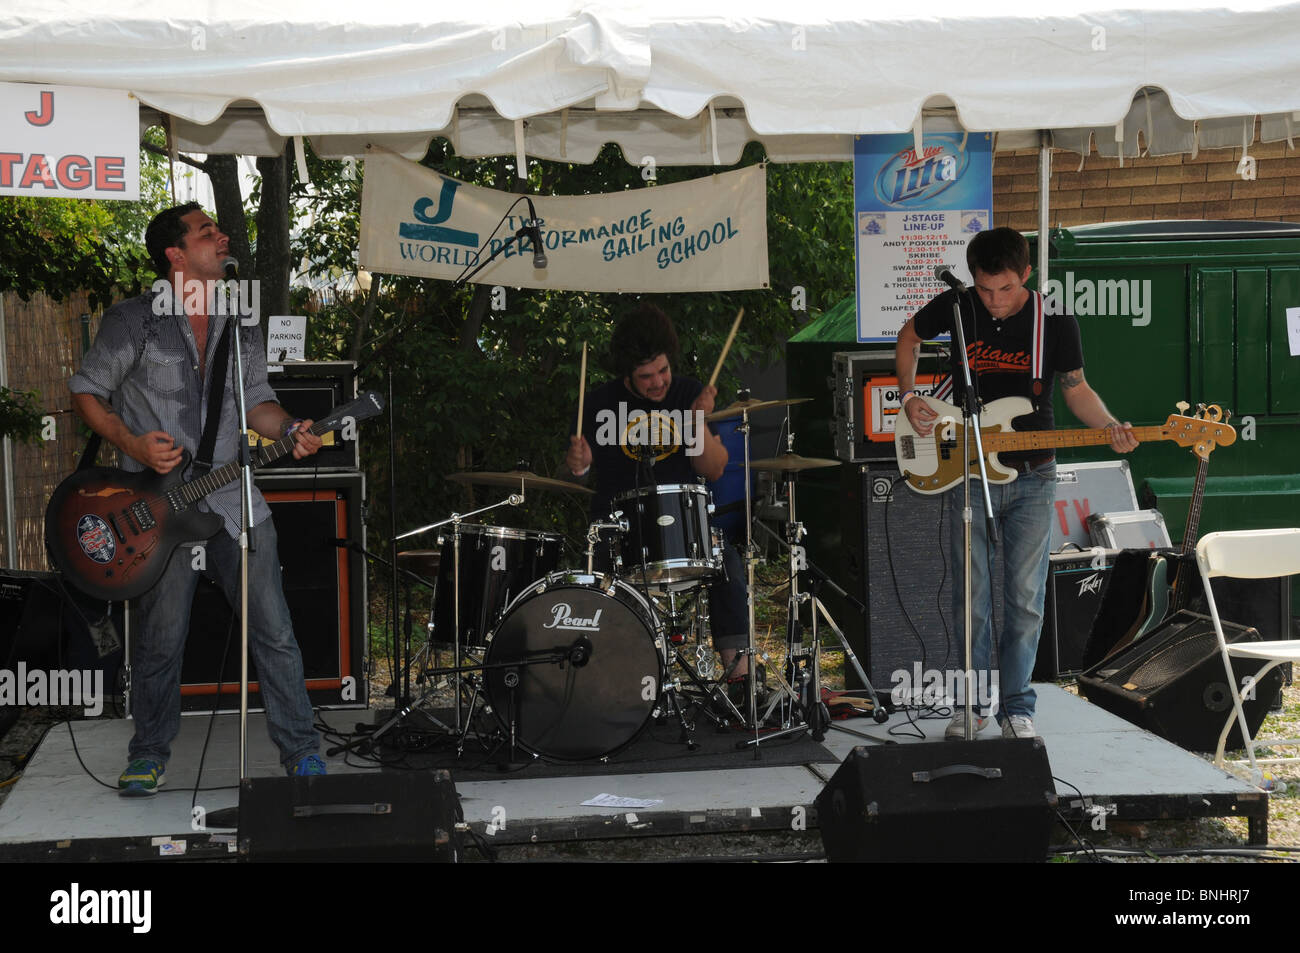 Lrizn Severn et ceux Victorius rock band joue au festival d'Eastport à Annapolis, Md Banque D'Images